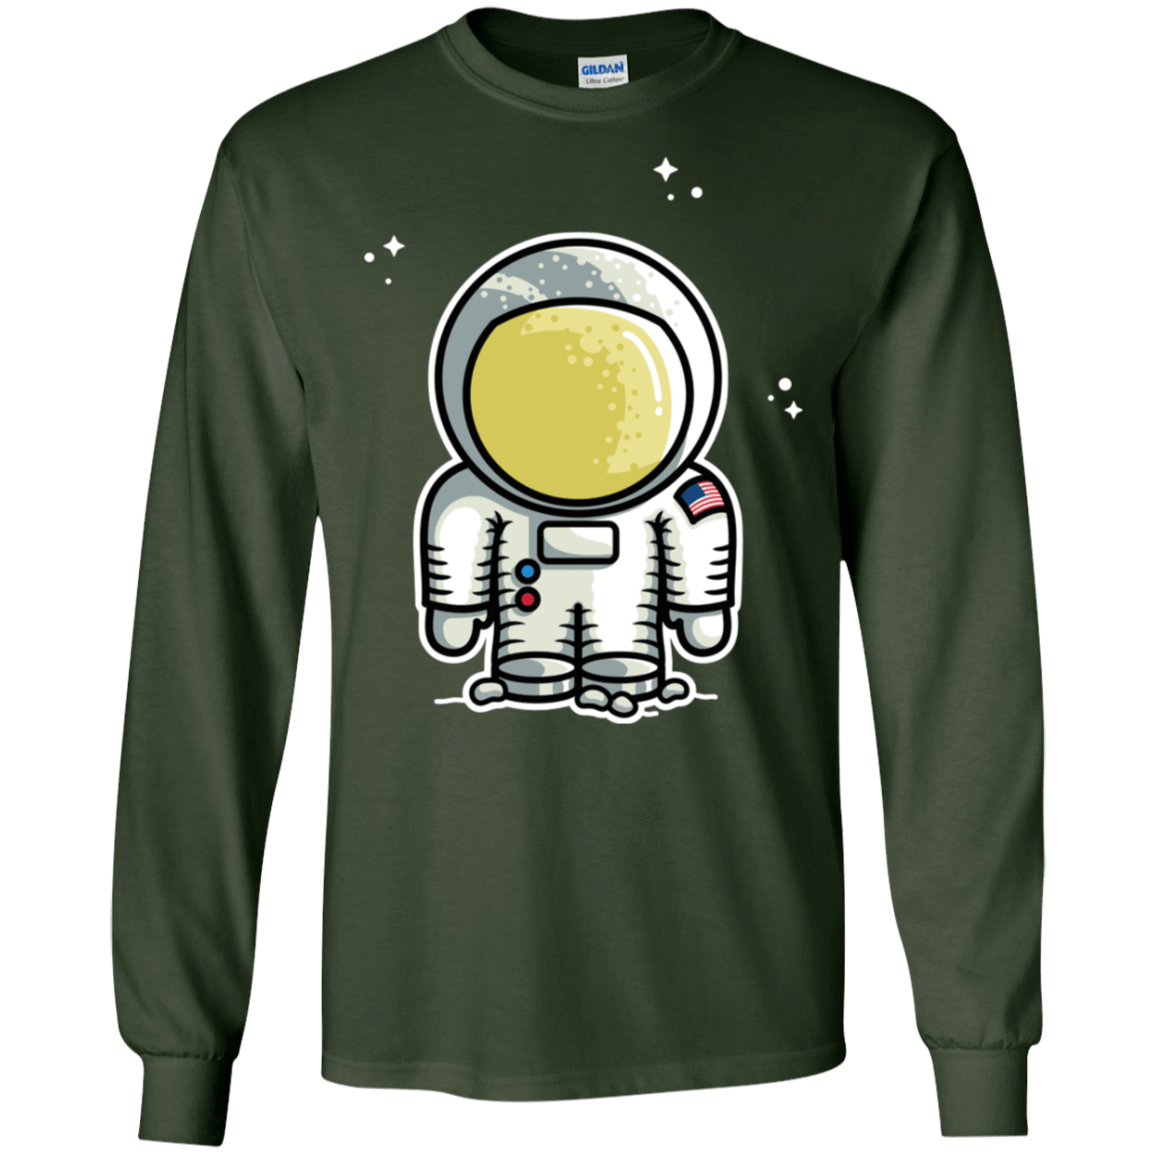 T-Shirts Forest Green / S Cute Astronaut Men's Long Sleeve T-Shirt